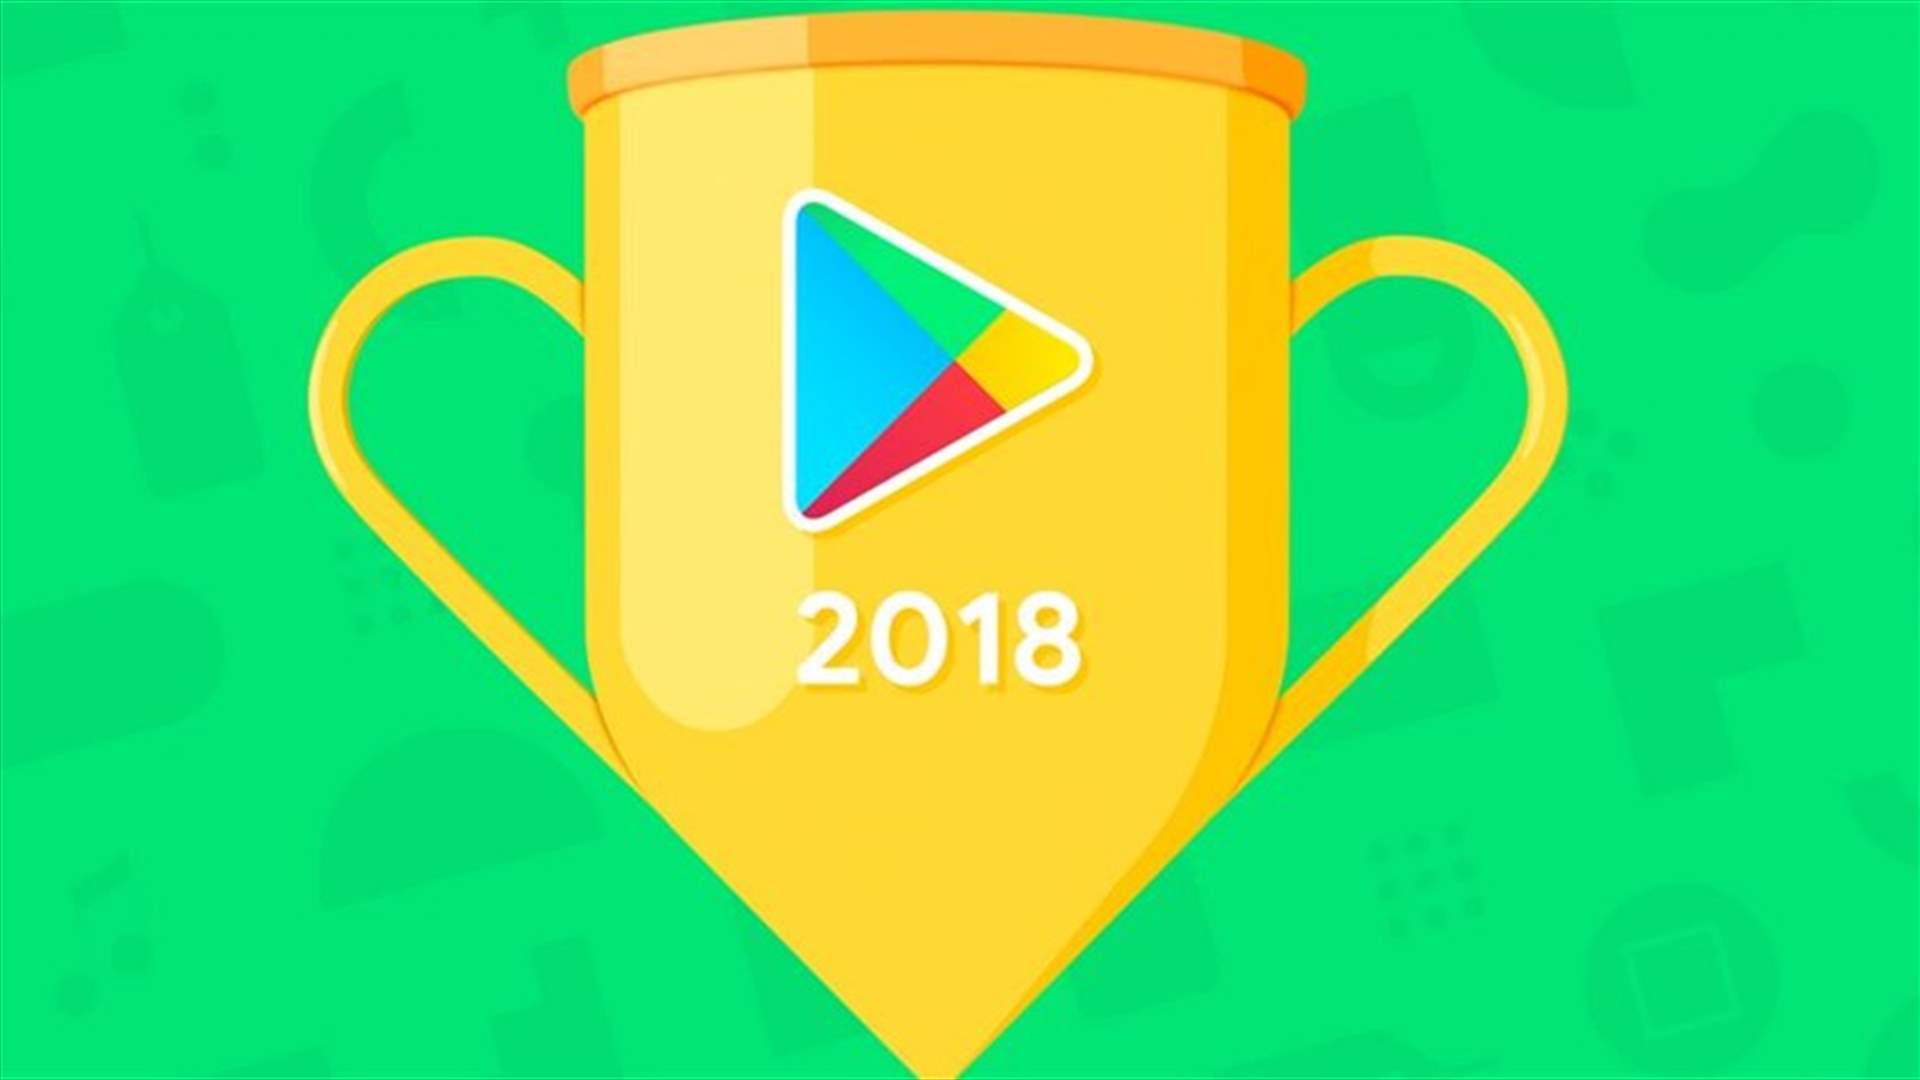 إليكم أفضل التطبيقات والألعاب على أندرويد للعام 2018 وفقًا لغوغل